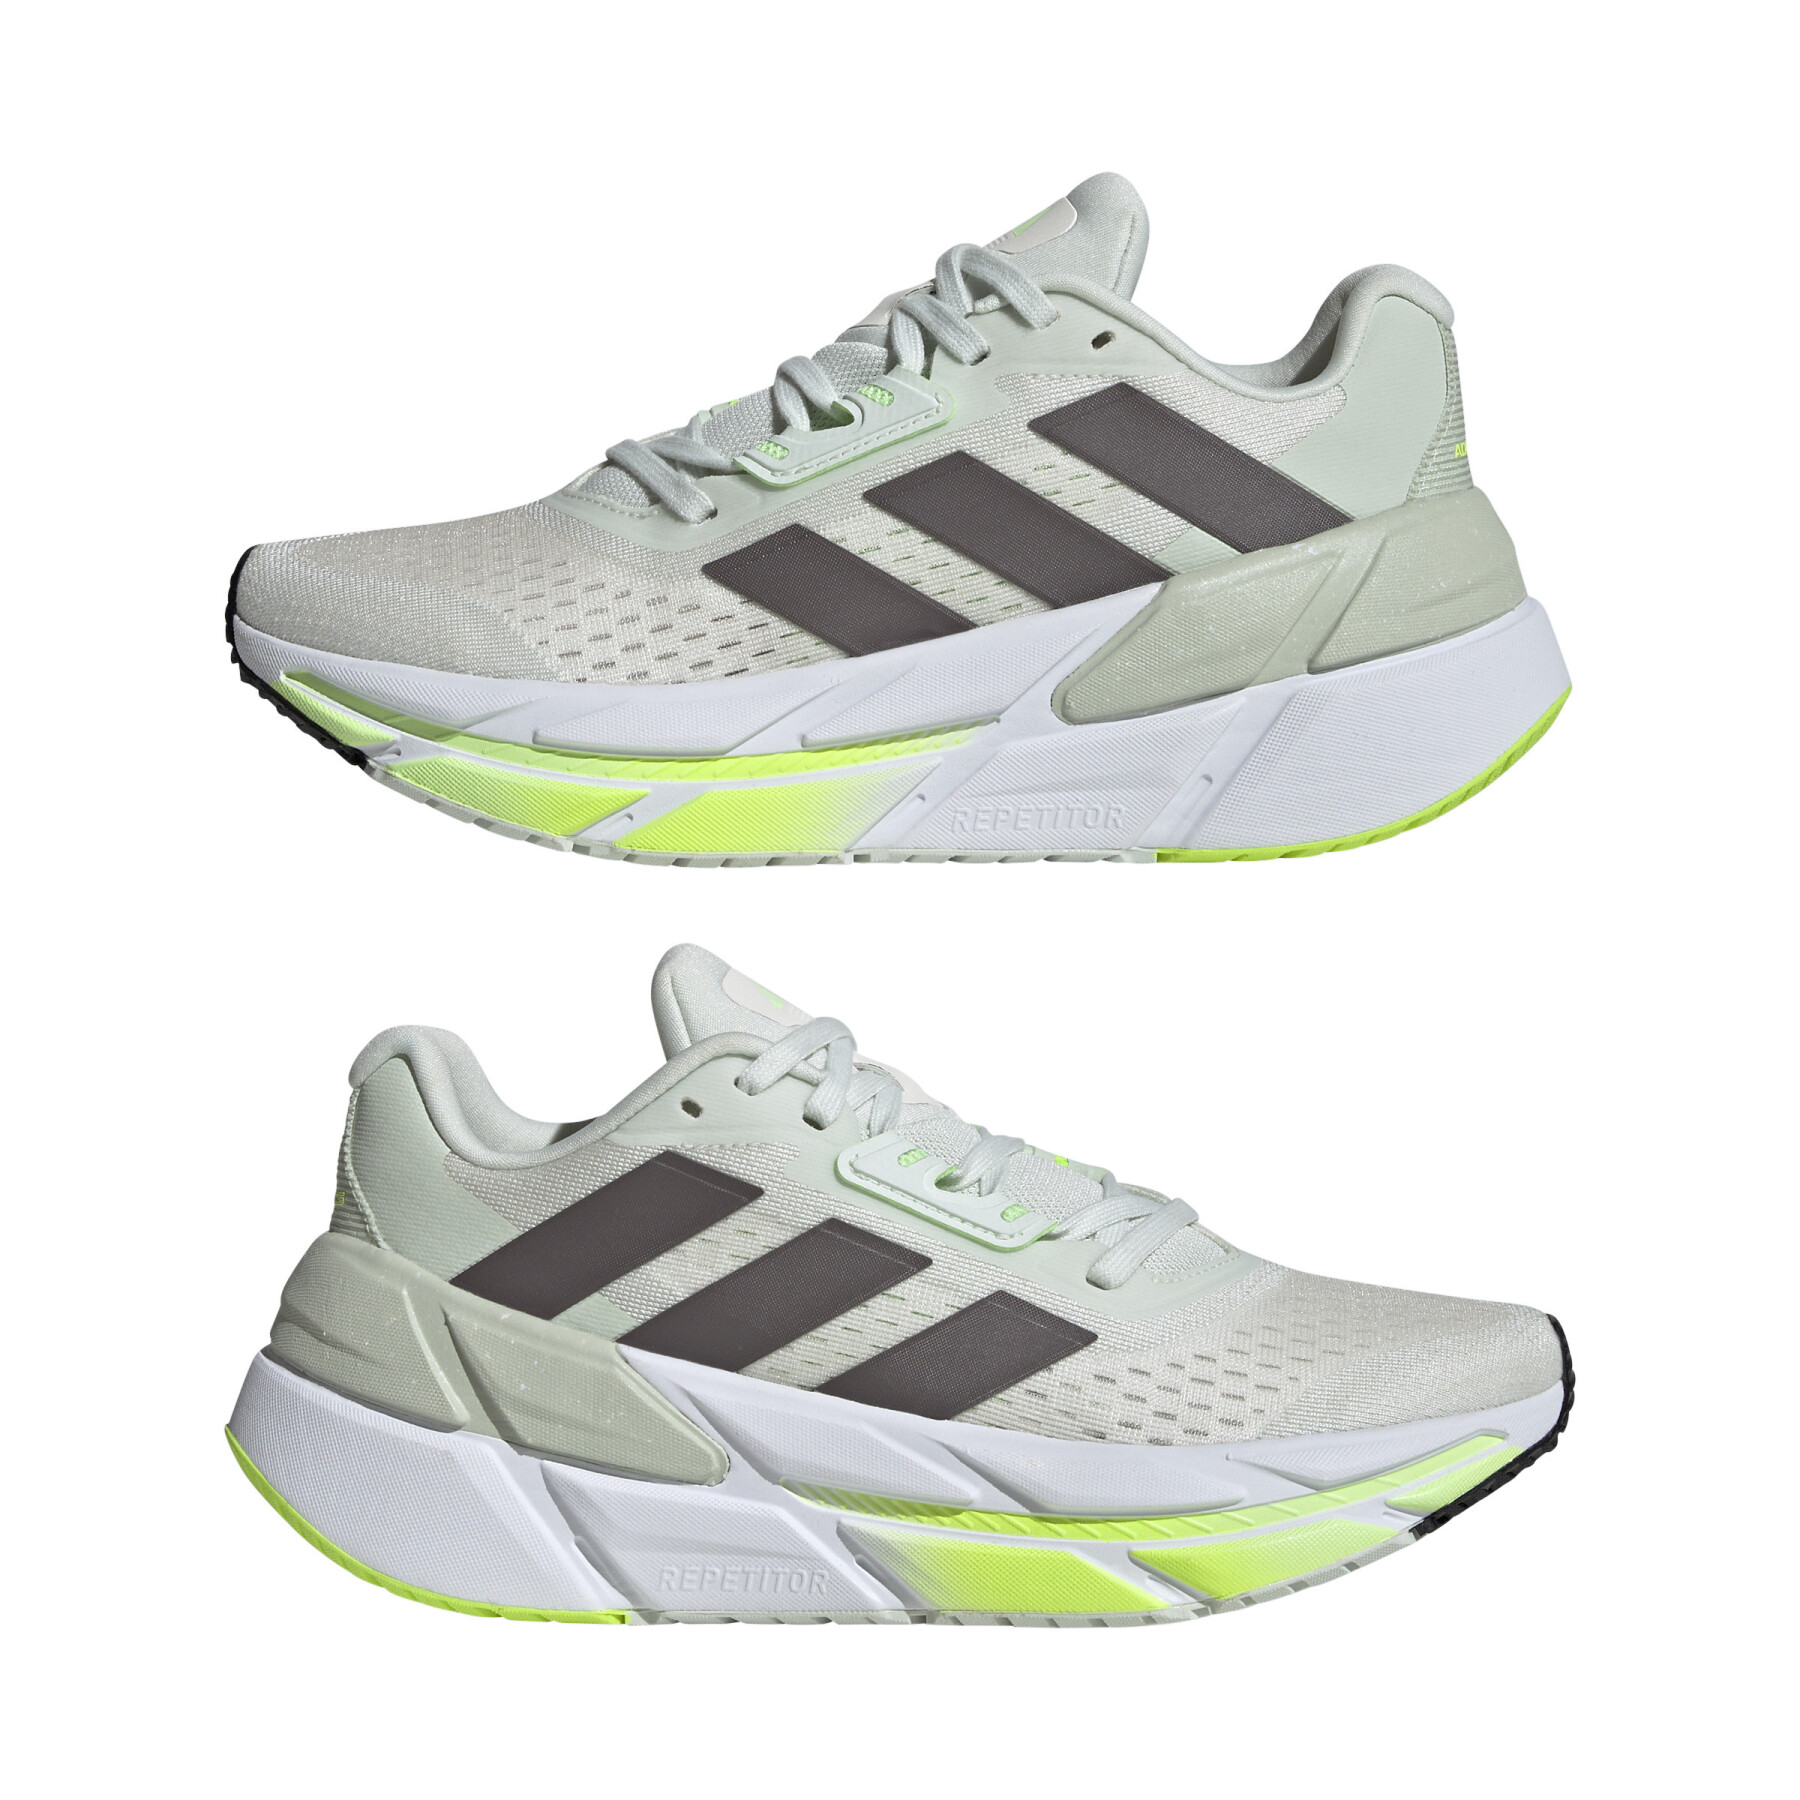 Chaussures de running femme adidas Adistar CS 2